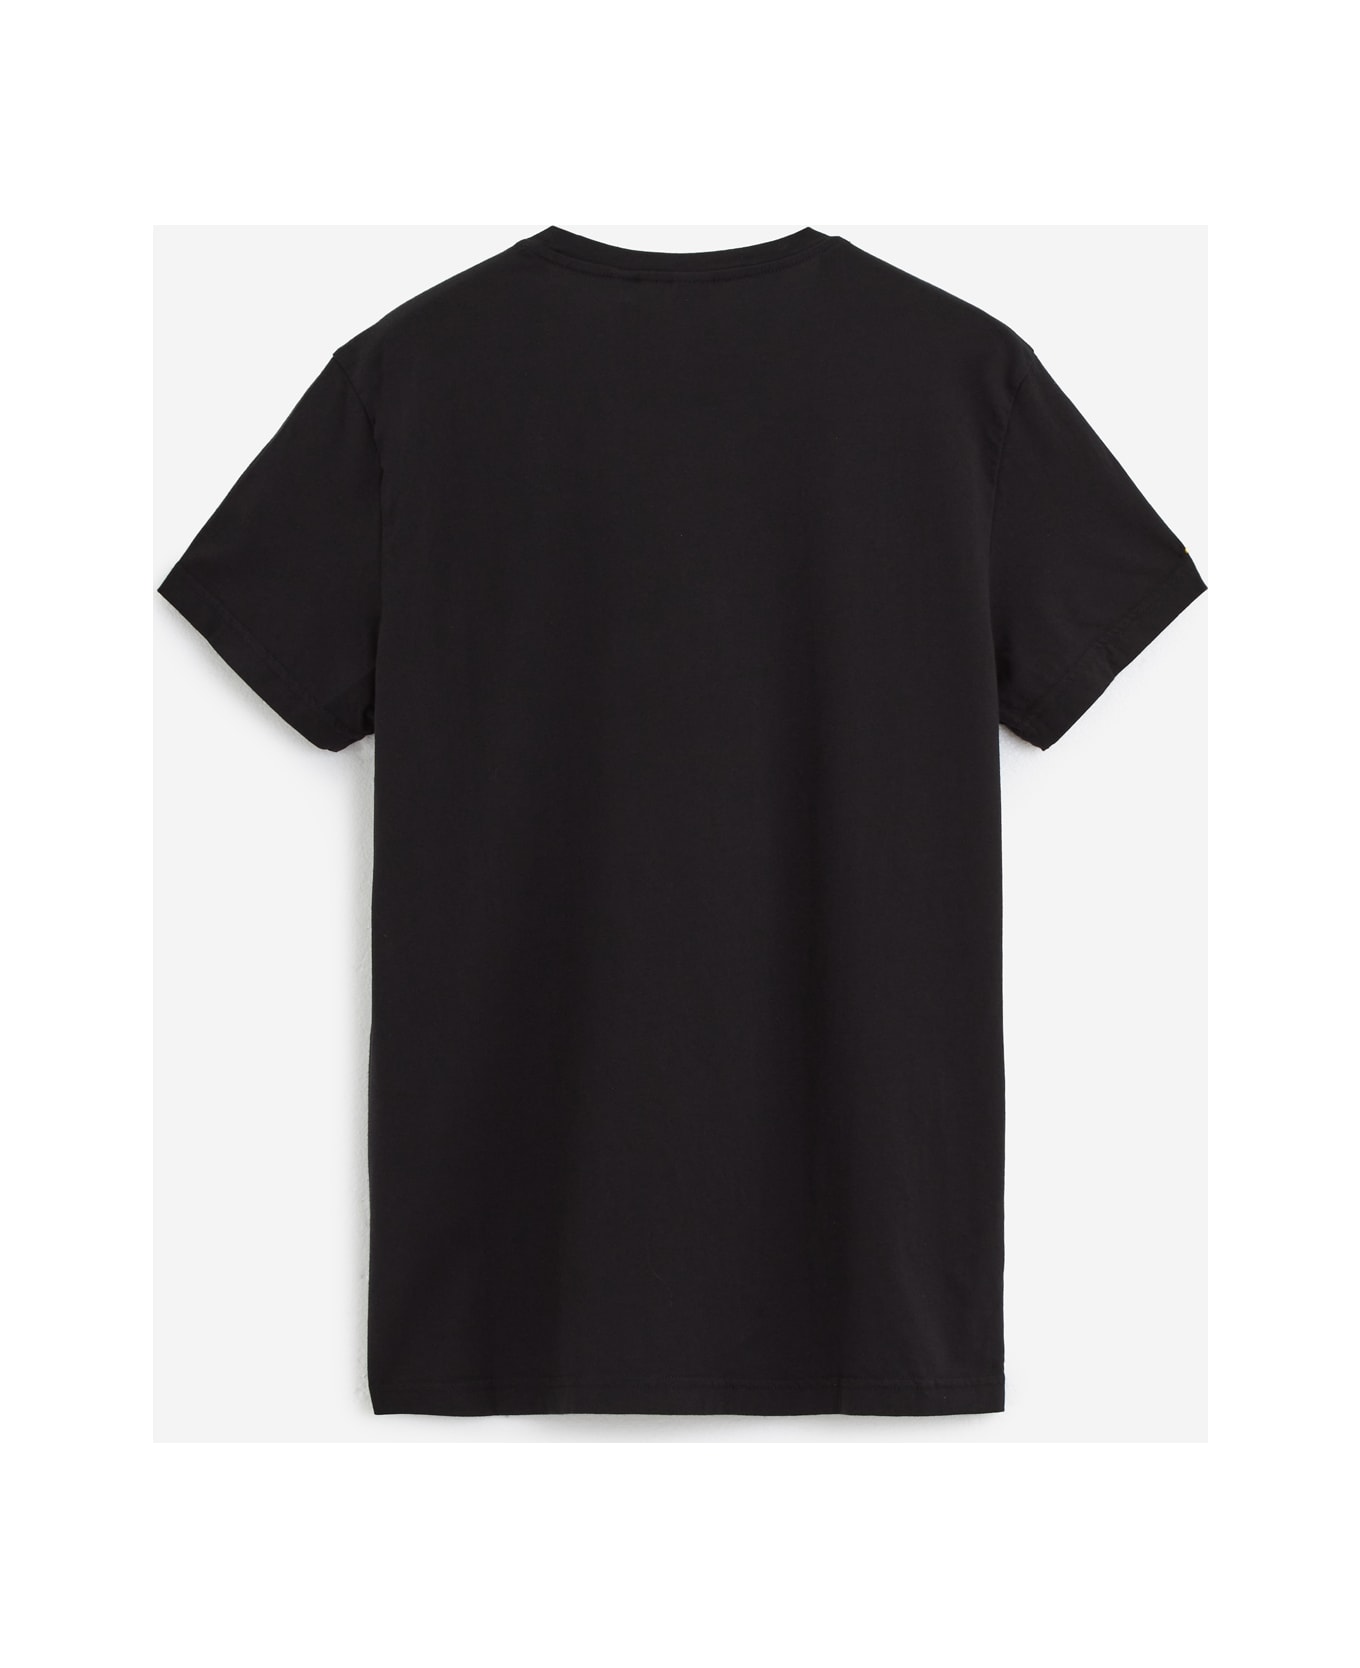 Aspesi Agitato T-shirt - black シャツ